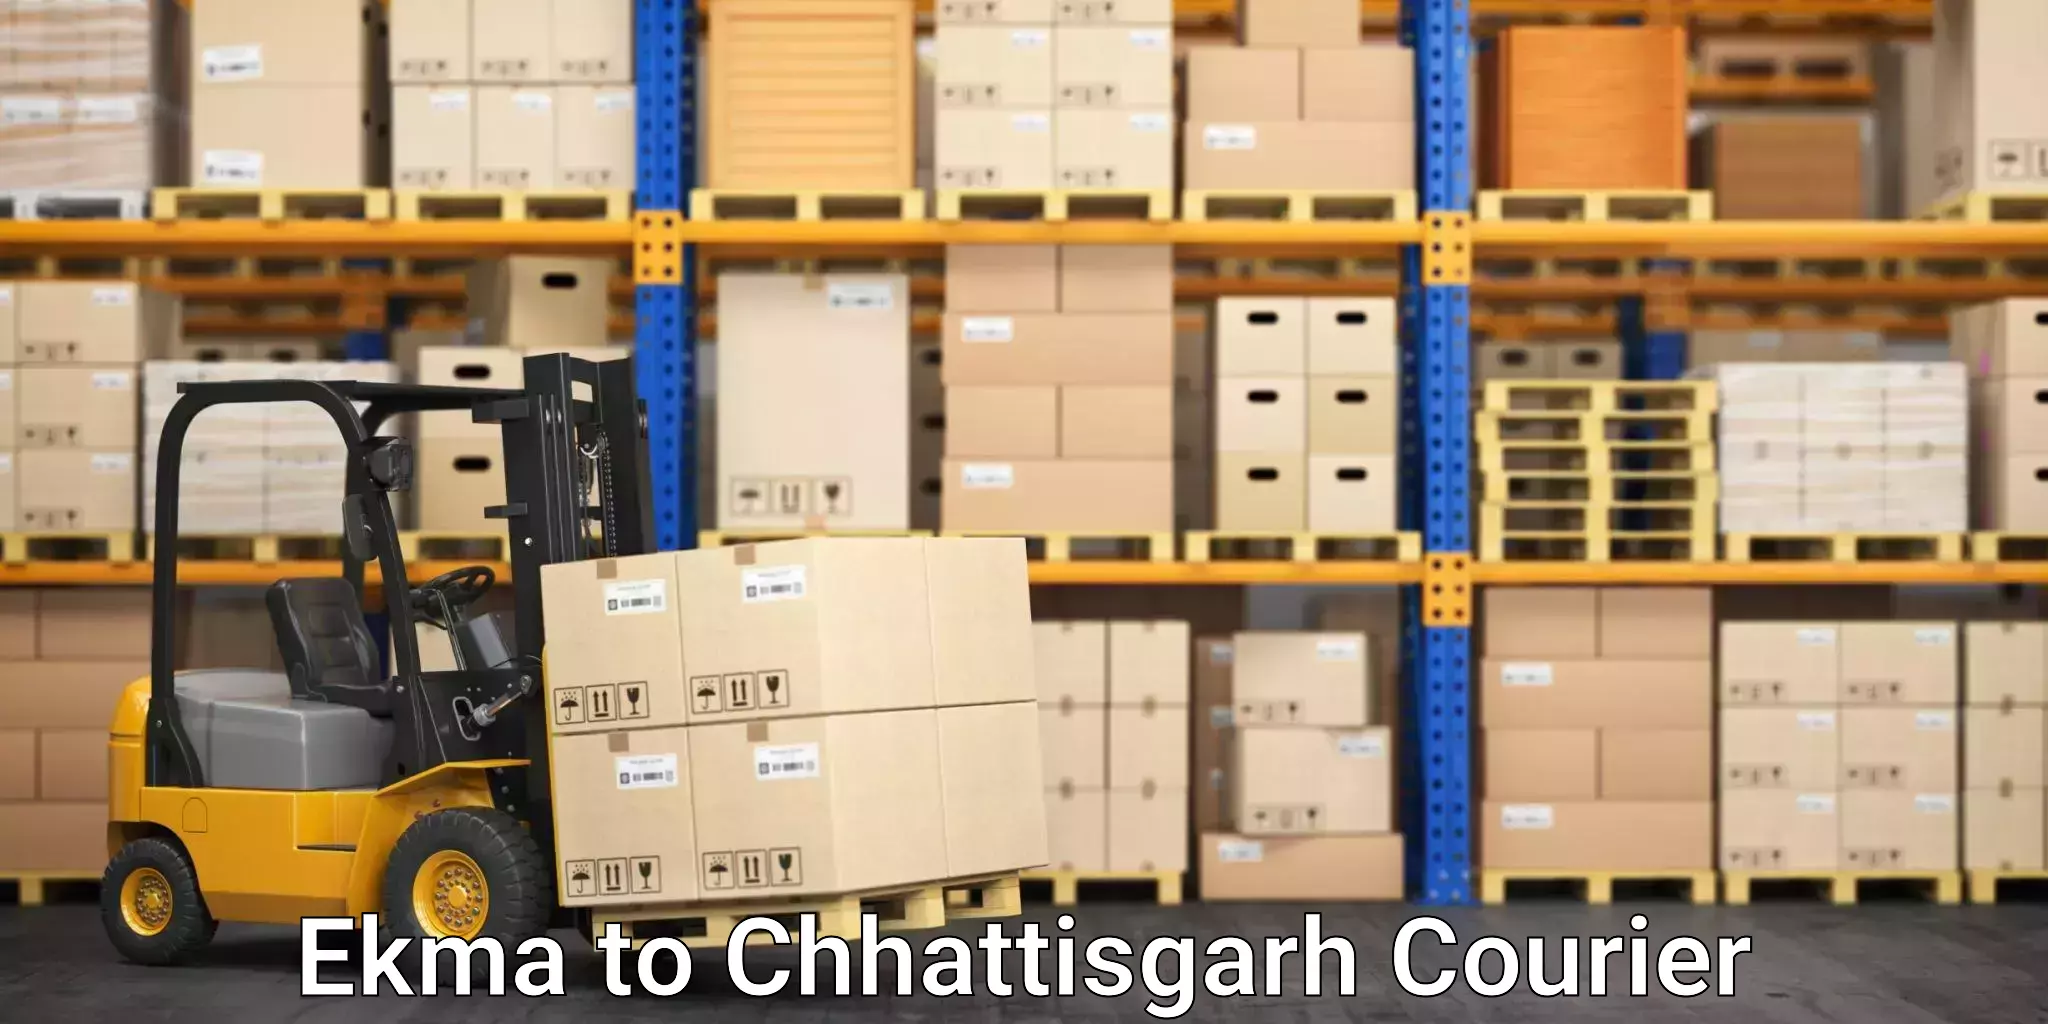 Professional relocation services in Ekma to Chhattisgarh